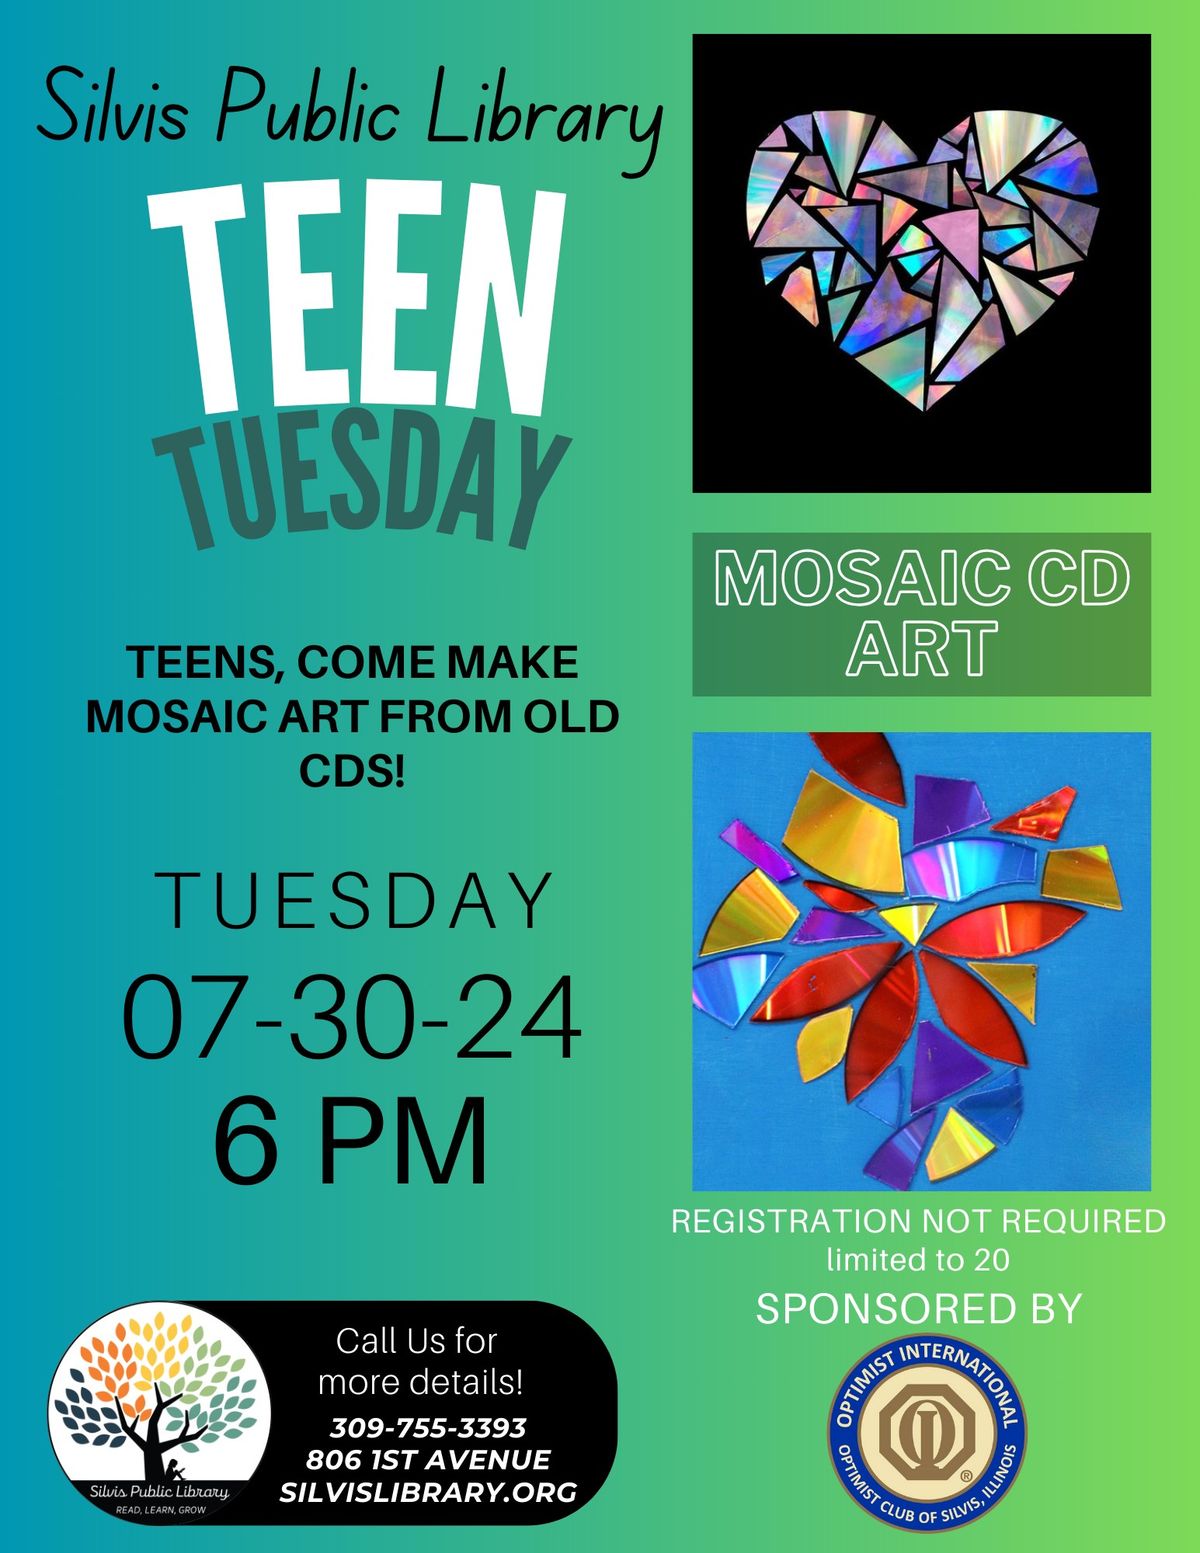 Teen Tuesday: Mosaic CD Art